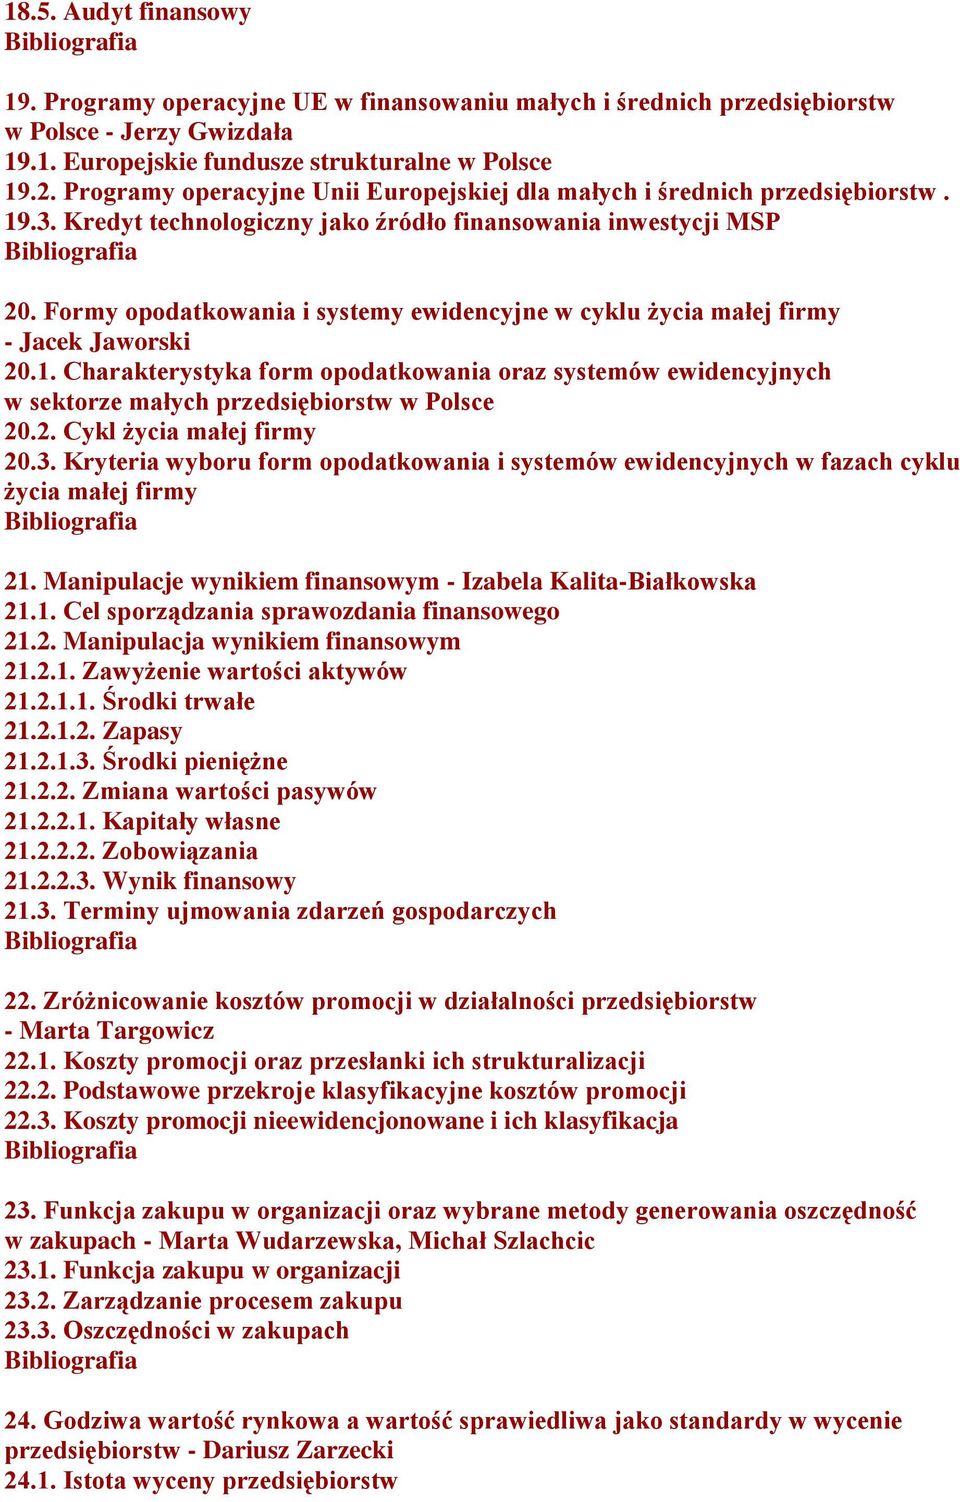 Formy opodatkowania i systemy ewidencyjne w cyklu życia małej firmy - Jacek Jaworski 20.1. Charakterystyka form opodatkowania oraz systemów ewidencyjnych w sektorze małych przedsiębiorstw w Polsce 20.